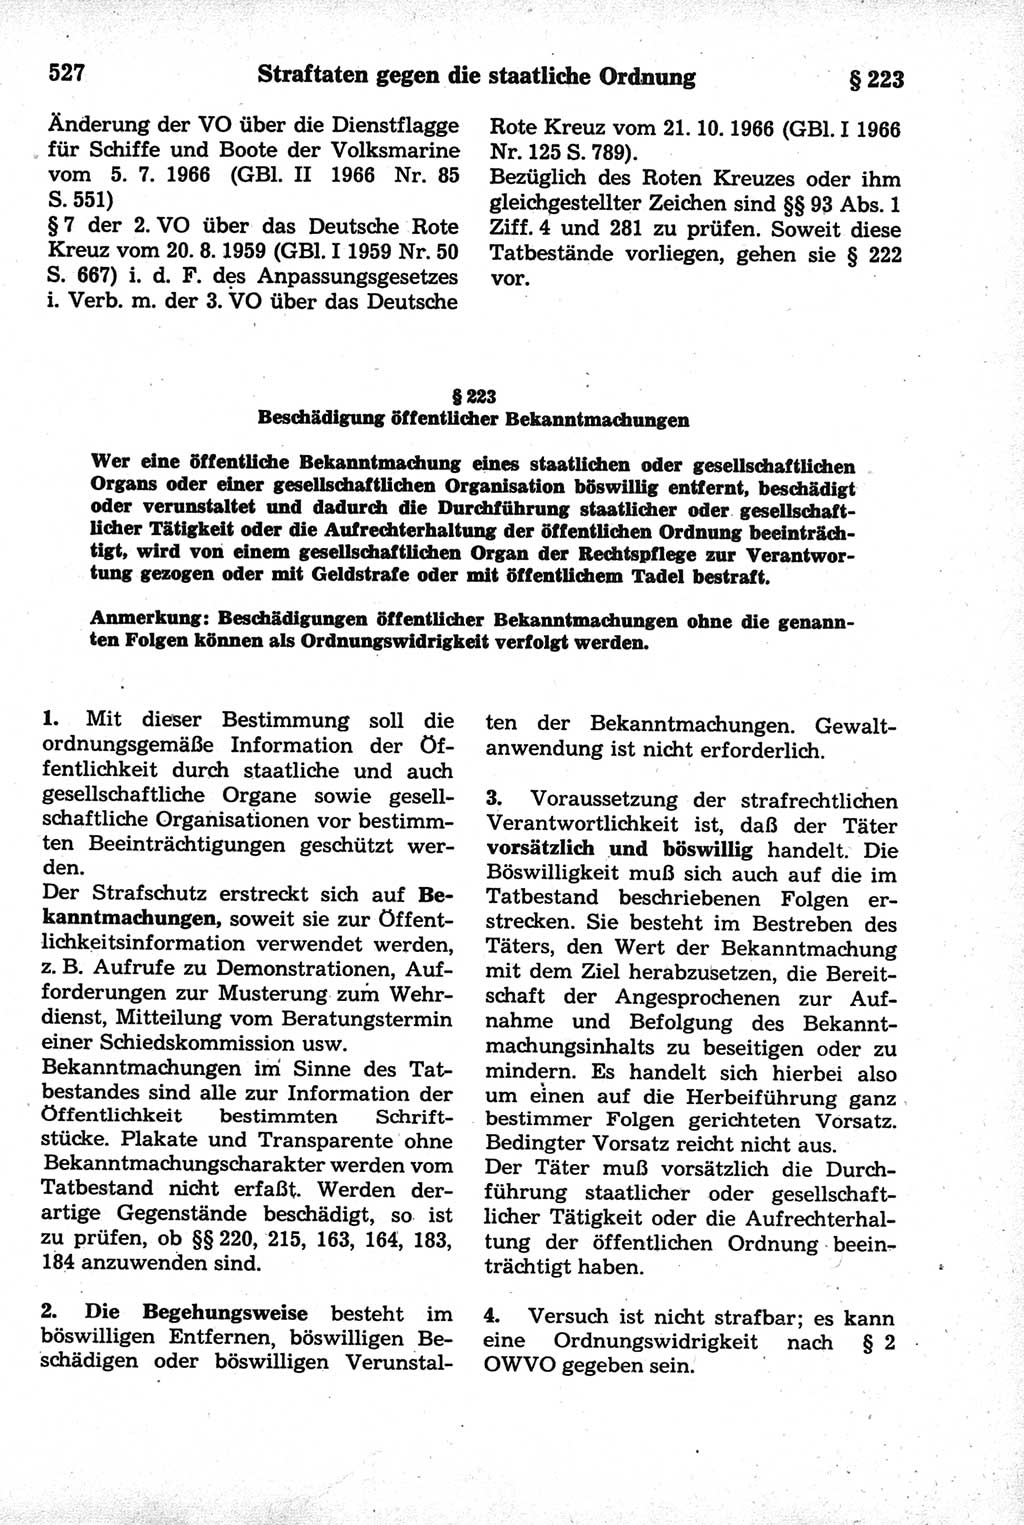 Strafrecht der Deutschen Demokratischen Republik (DDR), Kommentar zum Strafgesetzbuch (StGB) 1981, Seite 527 (Strafr. DDR Komm. StGB 1981, S. 527)